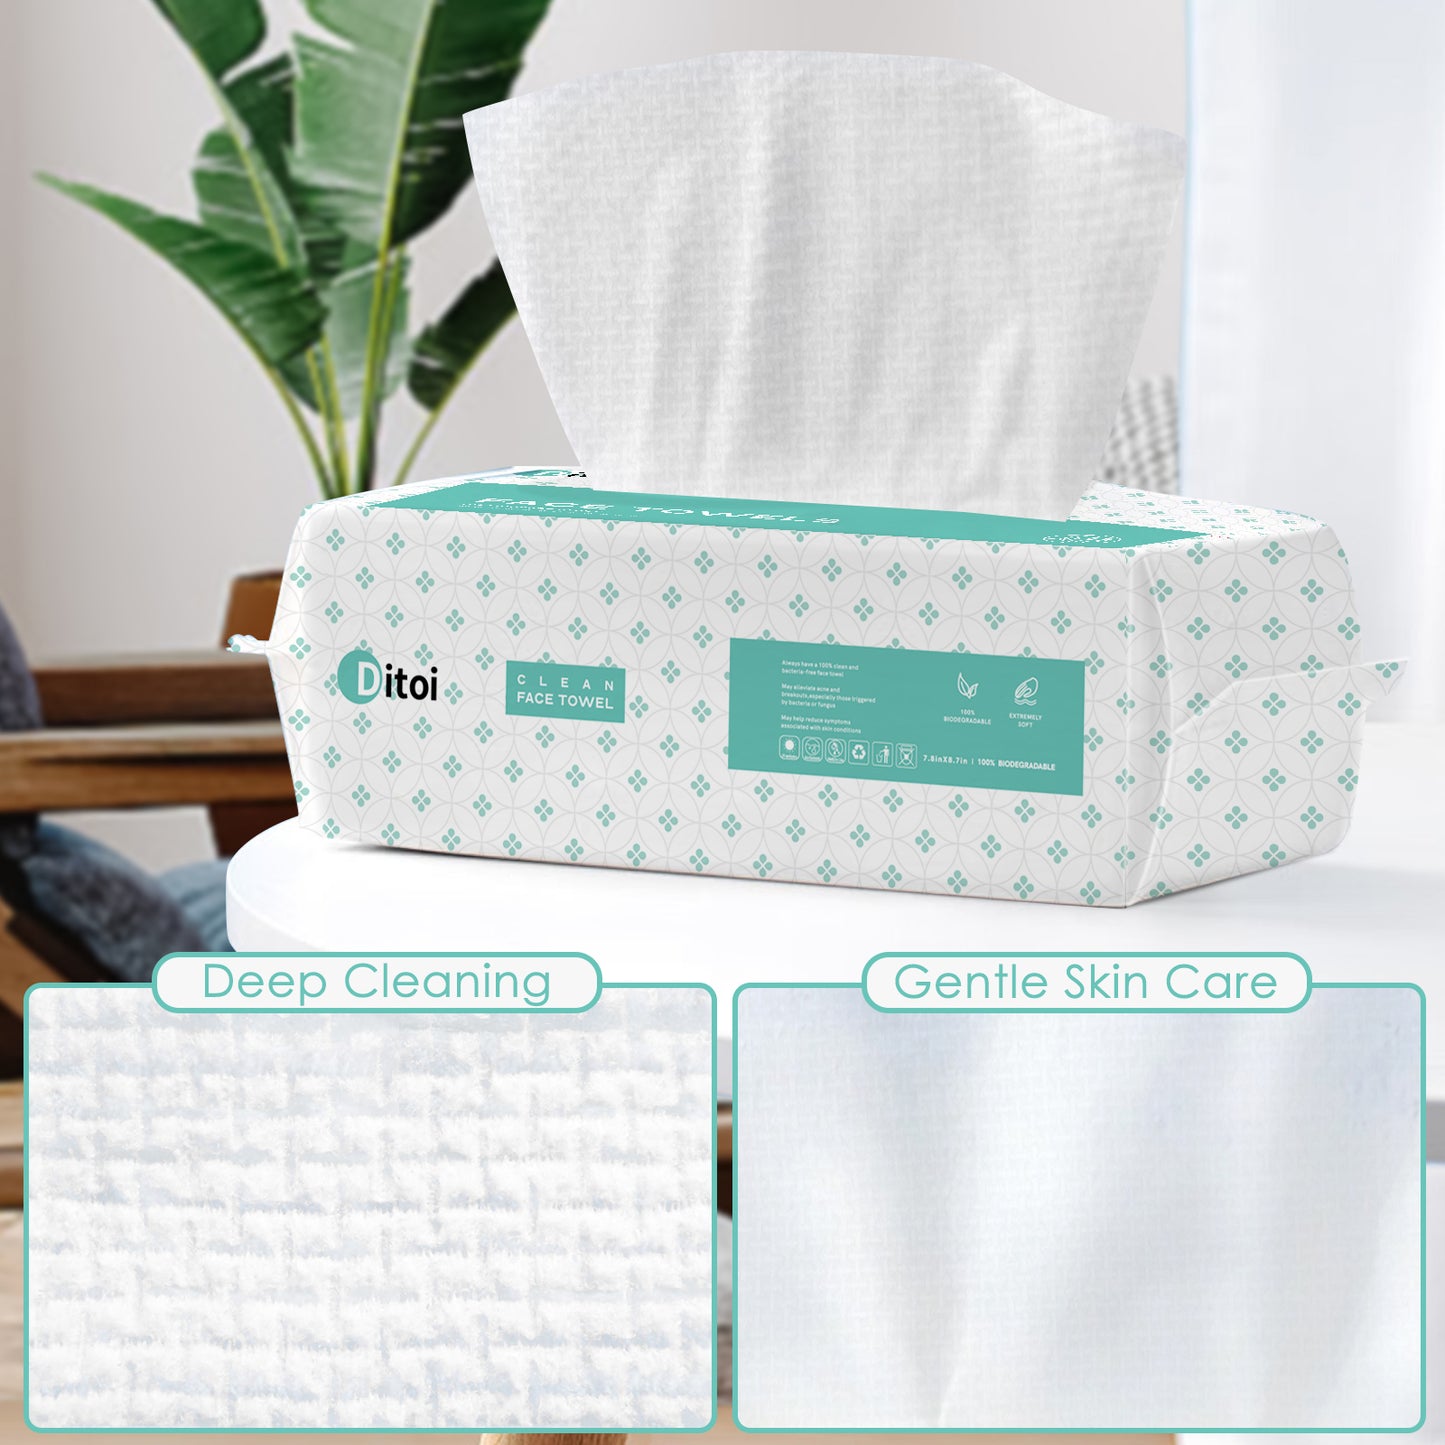 72 Bags Wholesale Ditoi 7.8"x8.7" Disposable Face Towels $6/Bag